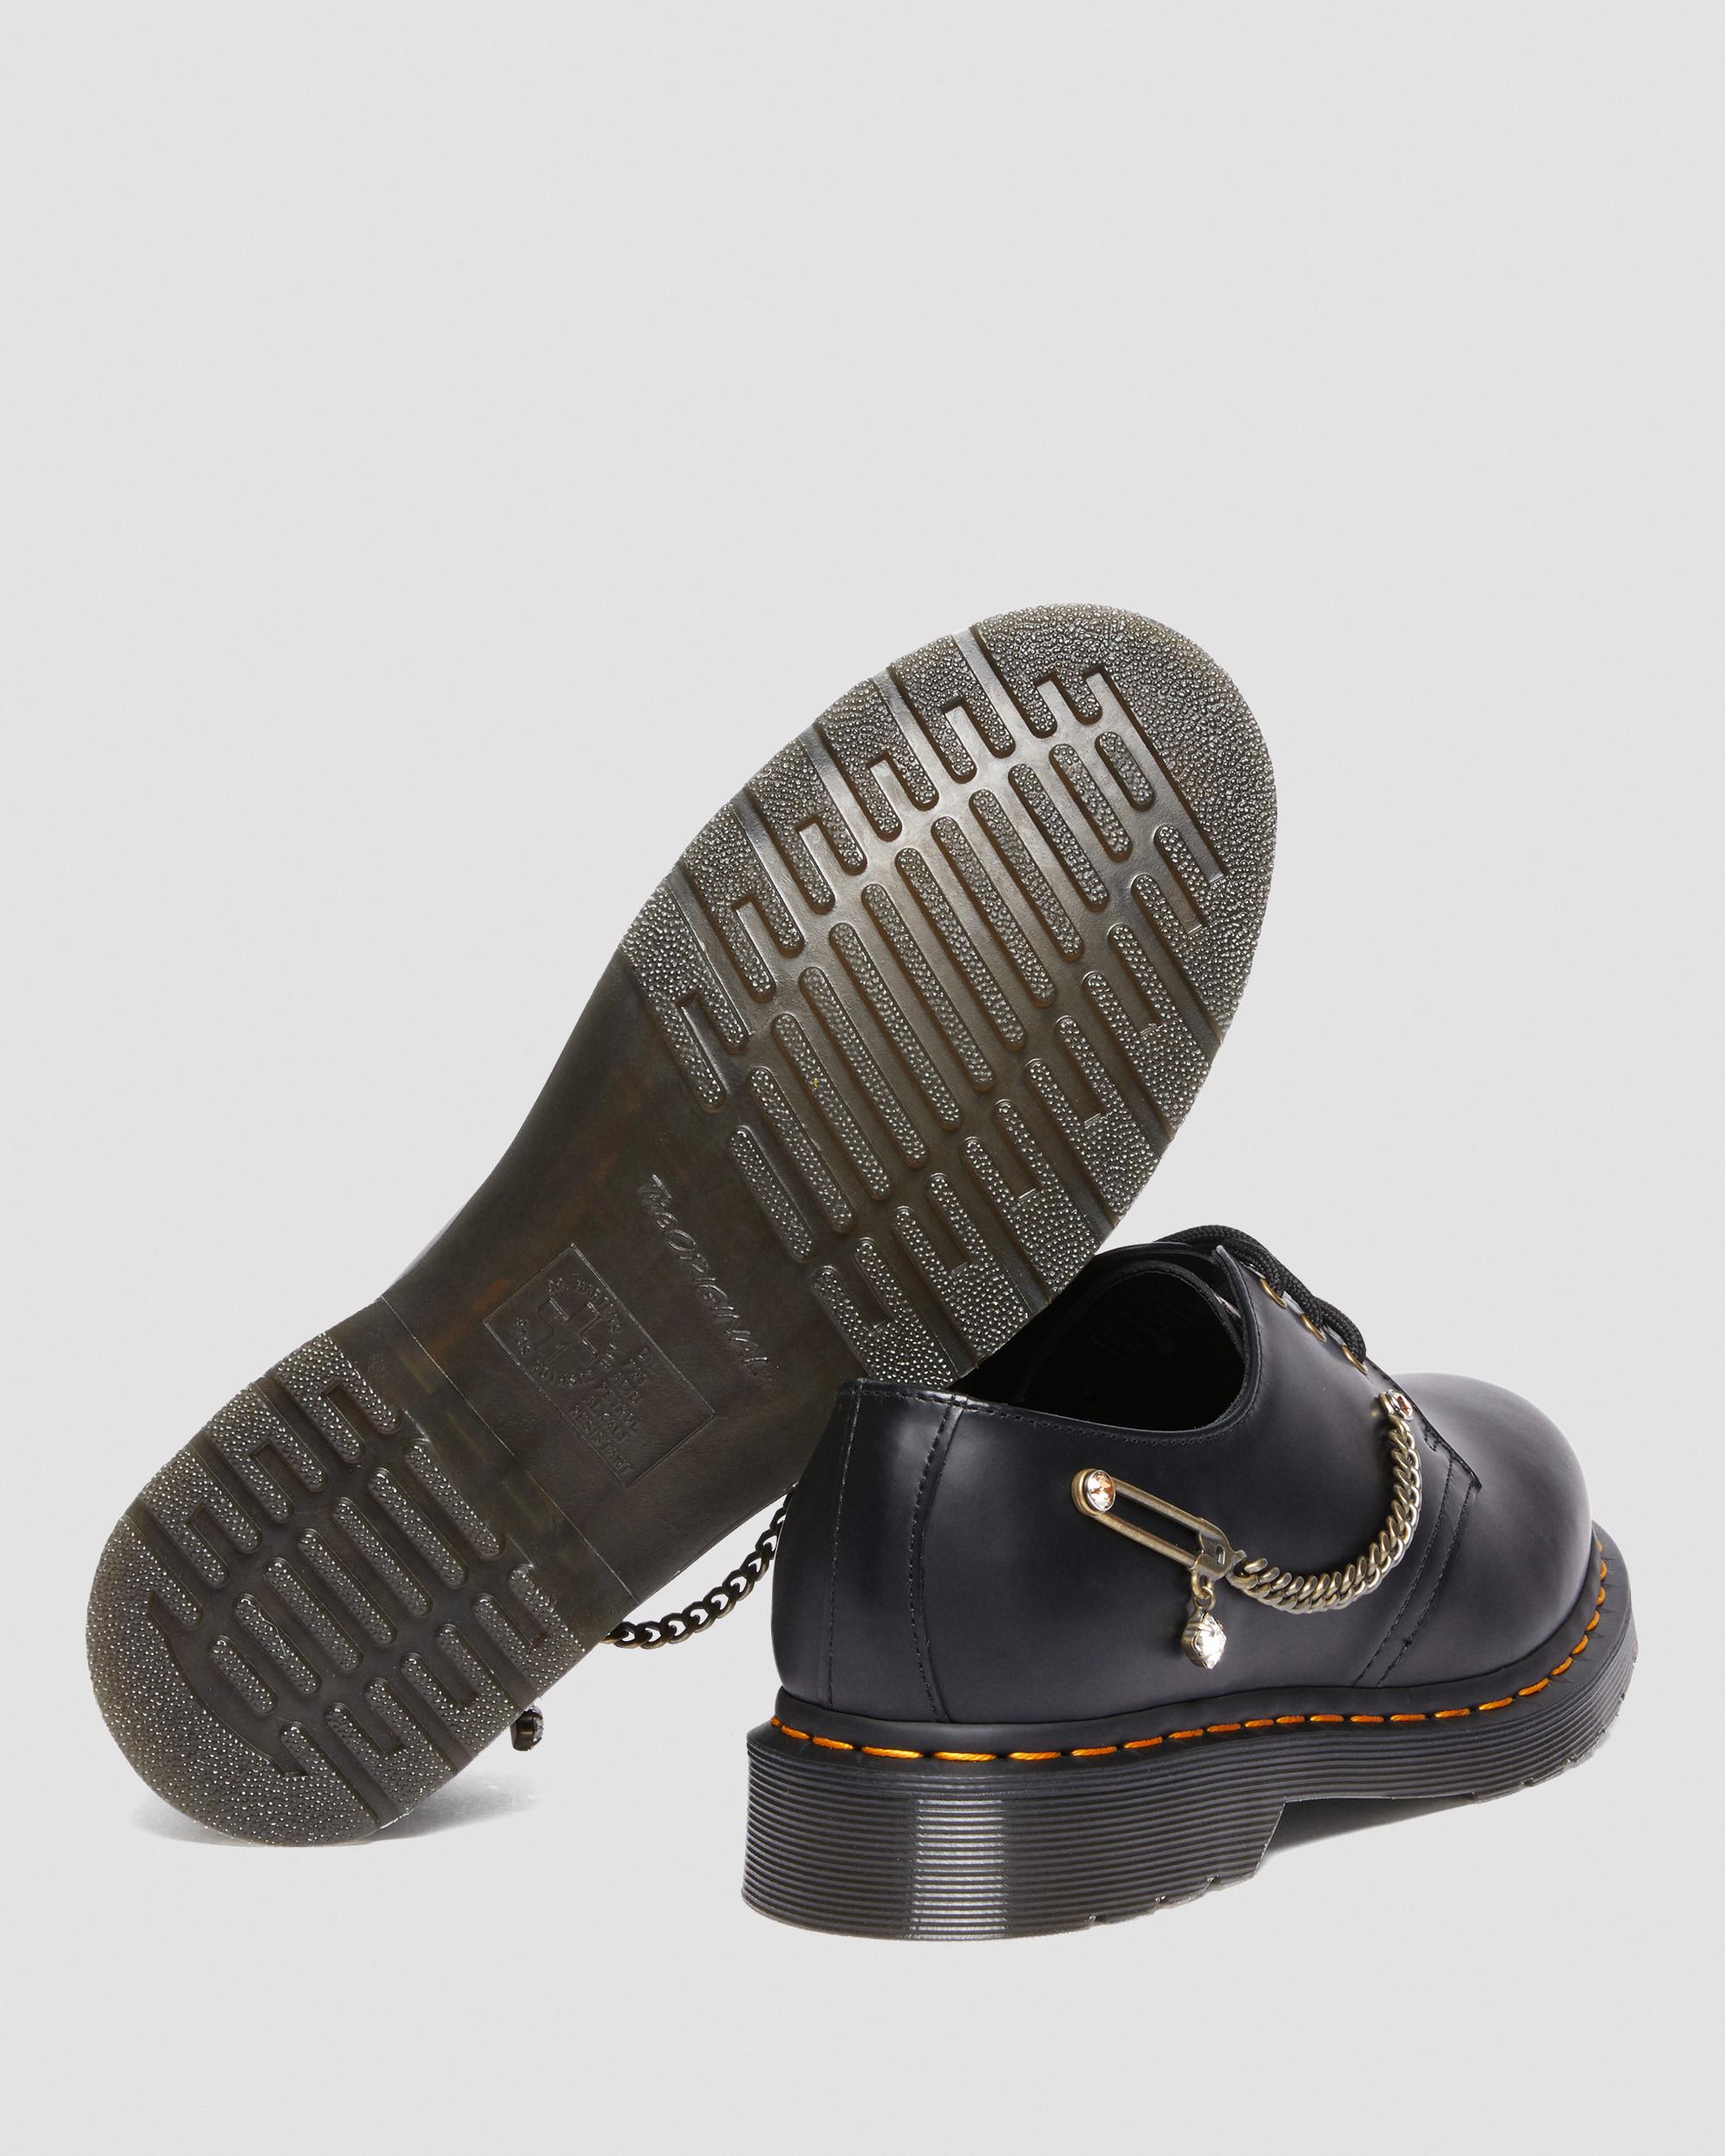 1461 Swarovski Leather Oxford Shoes | Dr. Martens